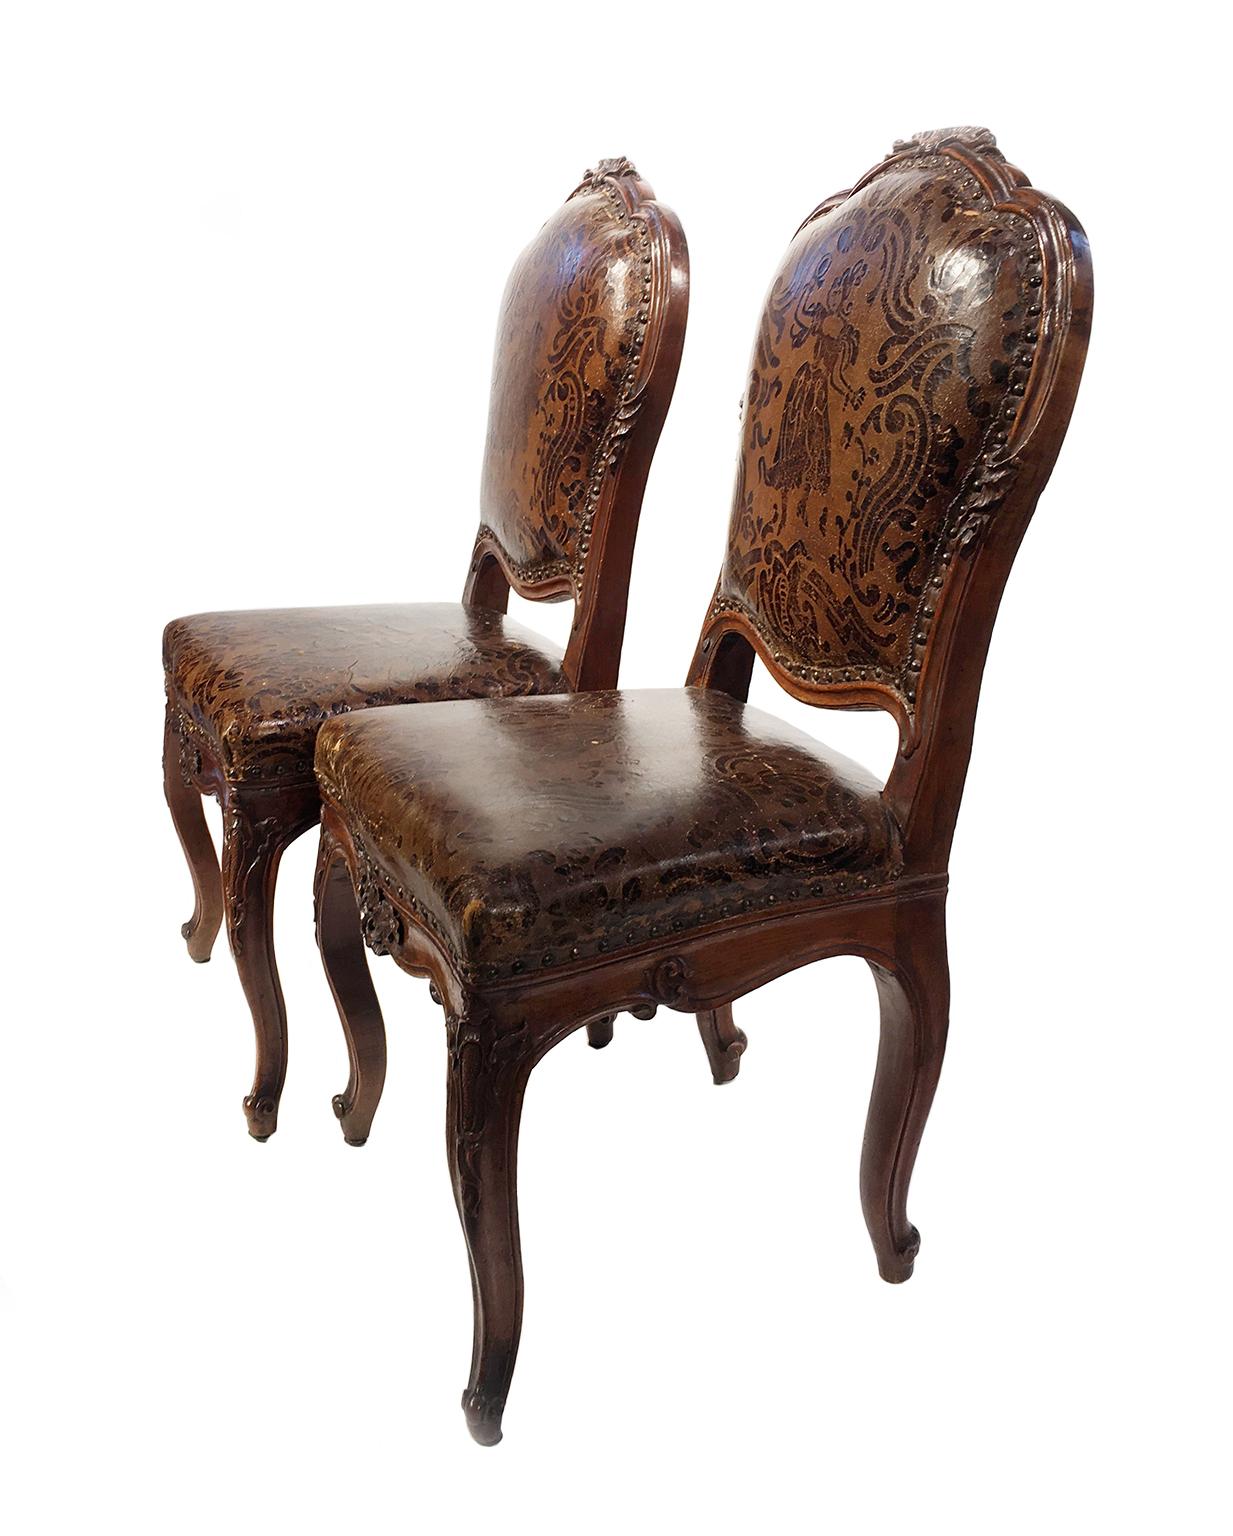 Quatre chaises en noyer sculpté recouvertes de cuir
Milan, vers 1750
Ils mesurent : 39,37